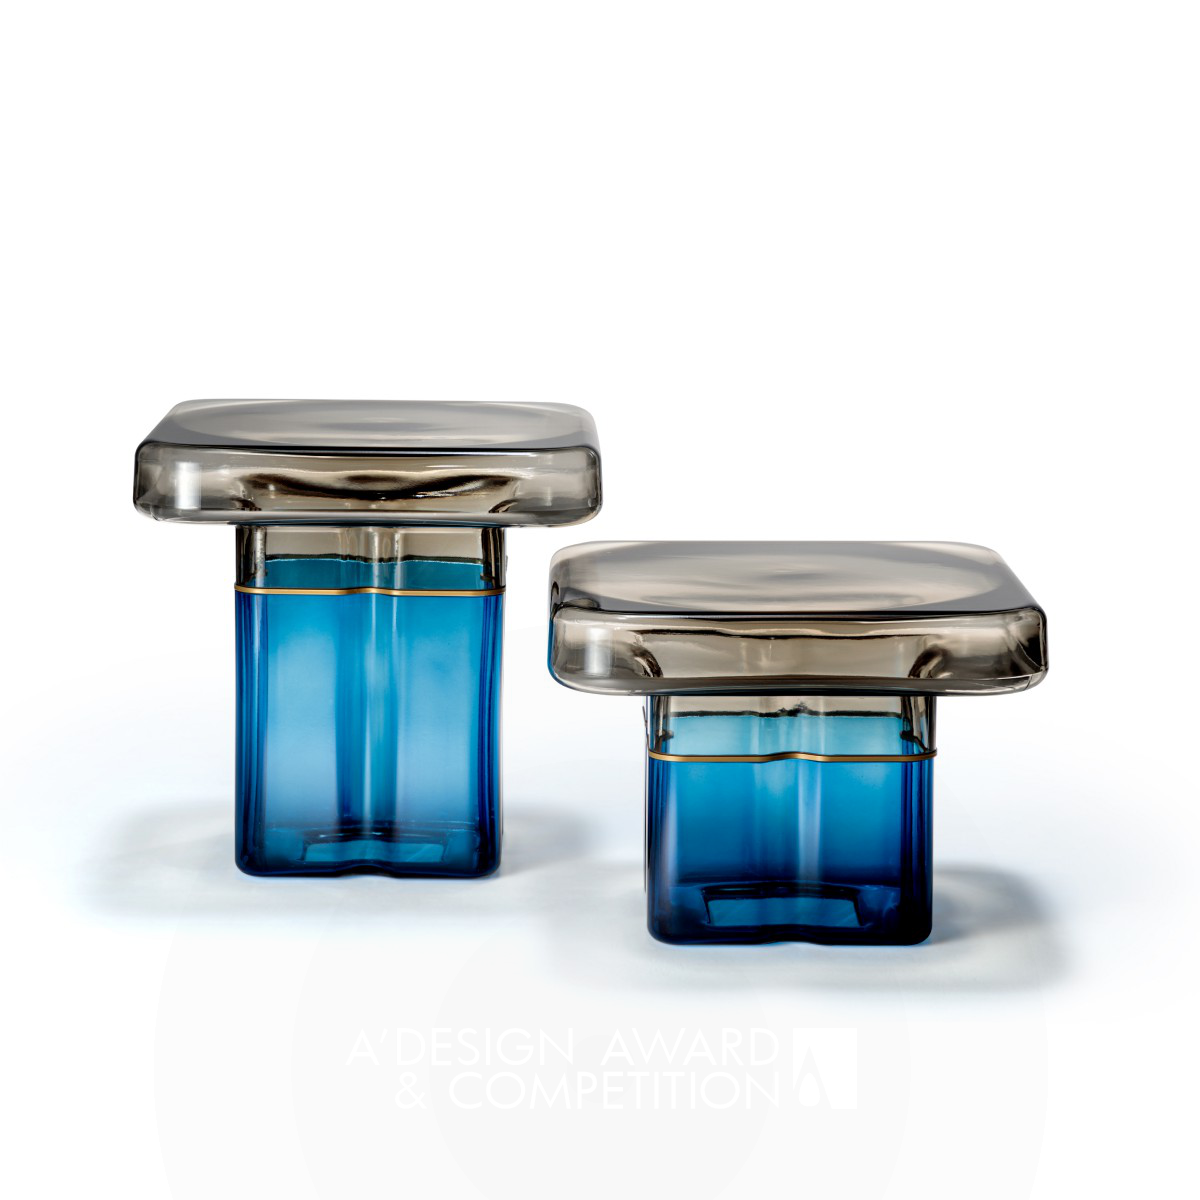 Maria Vittoria Fin wins Golden at the prestigious A' Furniture Design Award with Tau Murano Small Table.